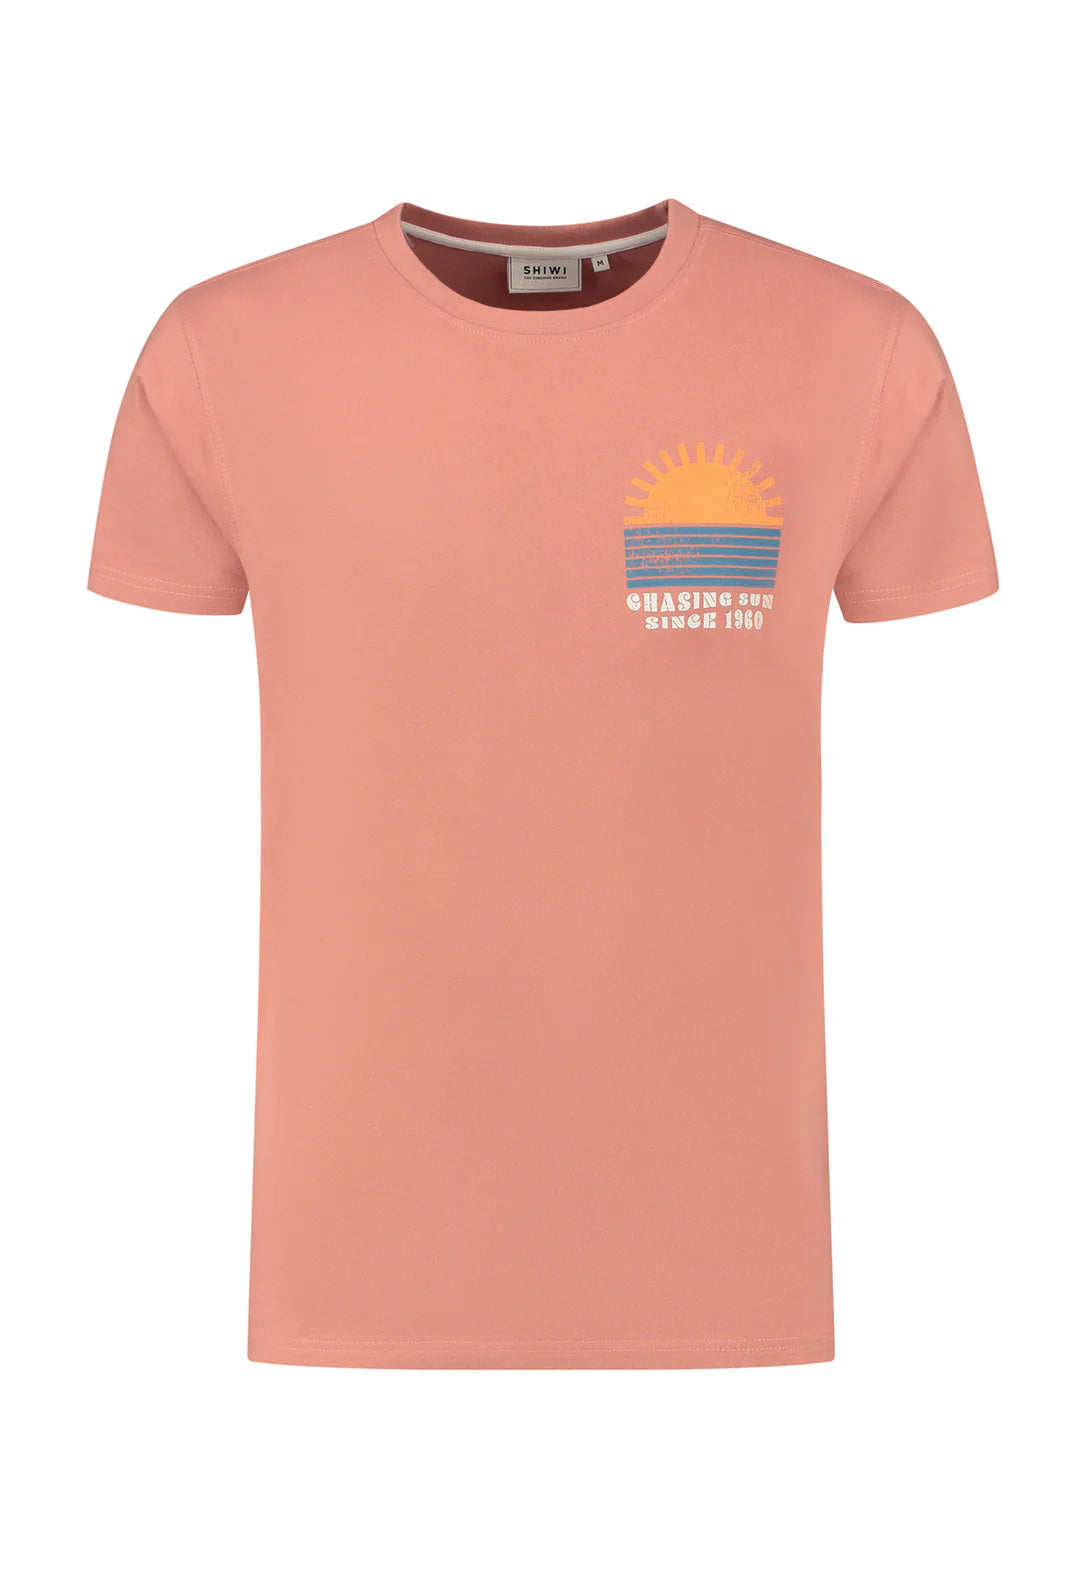 Sunset t-shirt faded pink - Shiwi